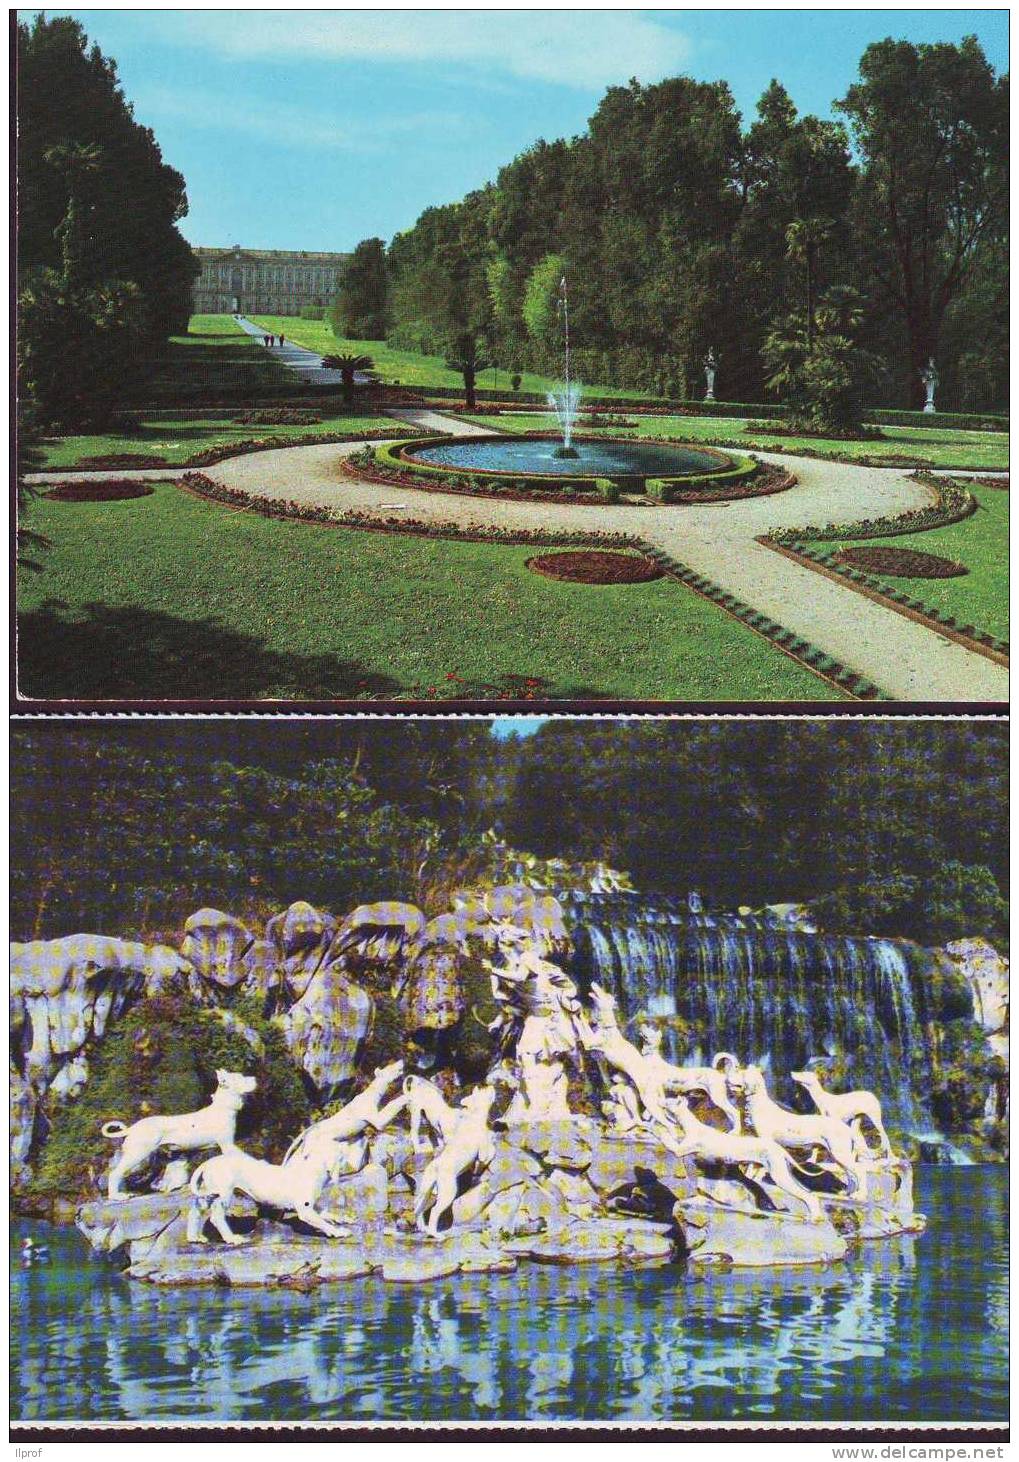 Offerta, 5 Cartoline Del Parco Della Reggia Di Caserta - Caserta